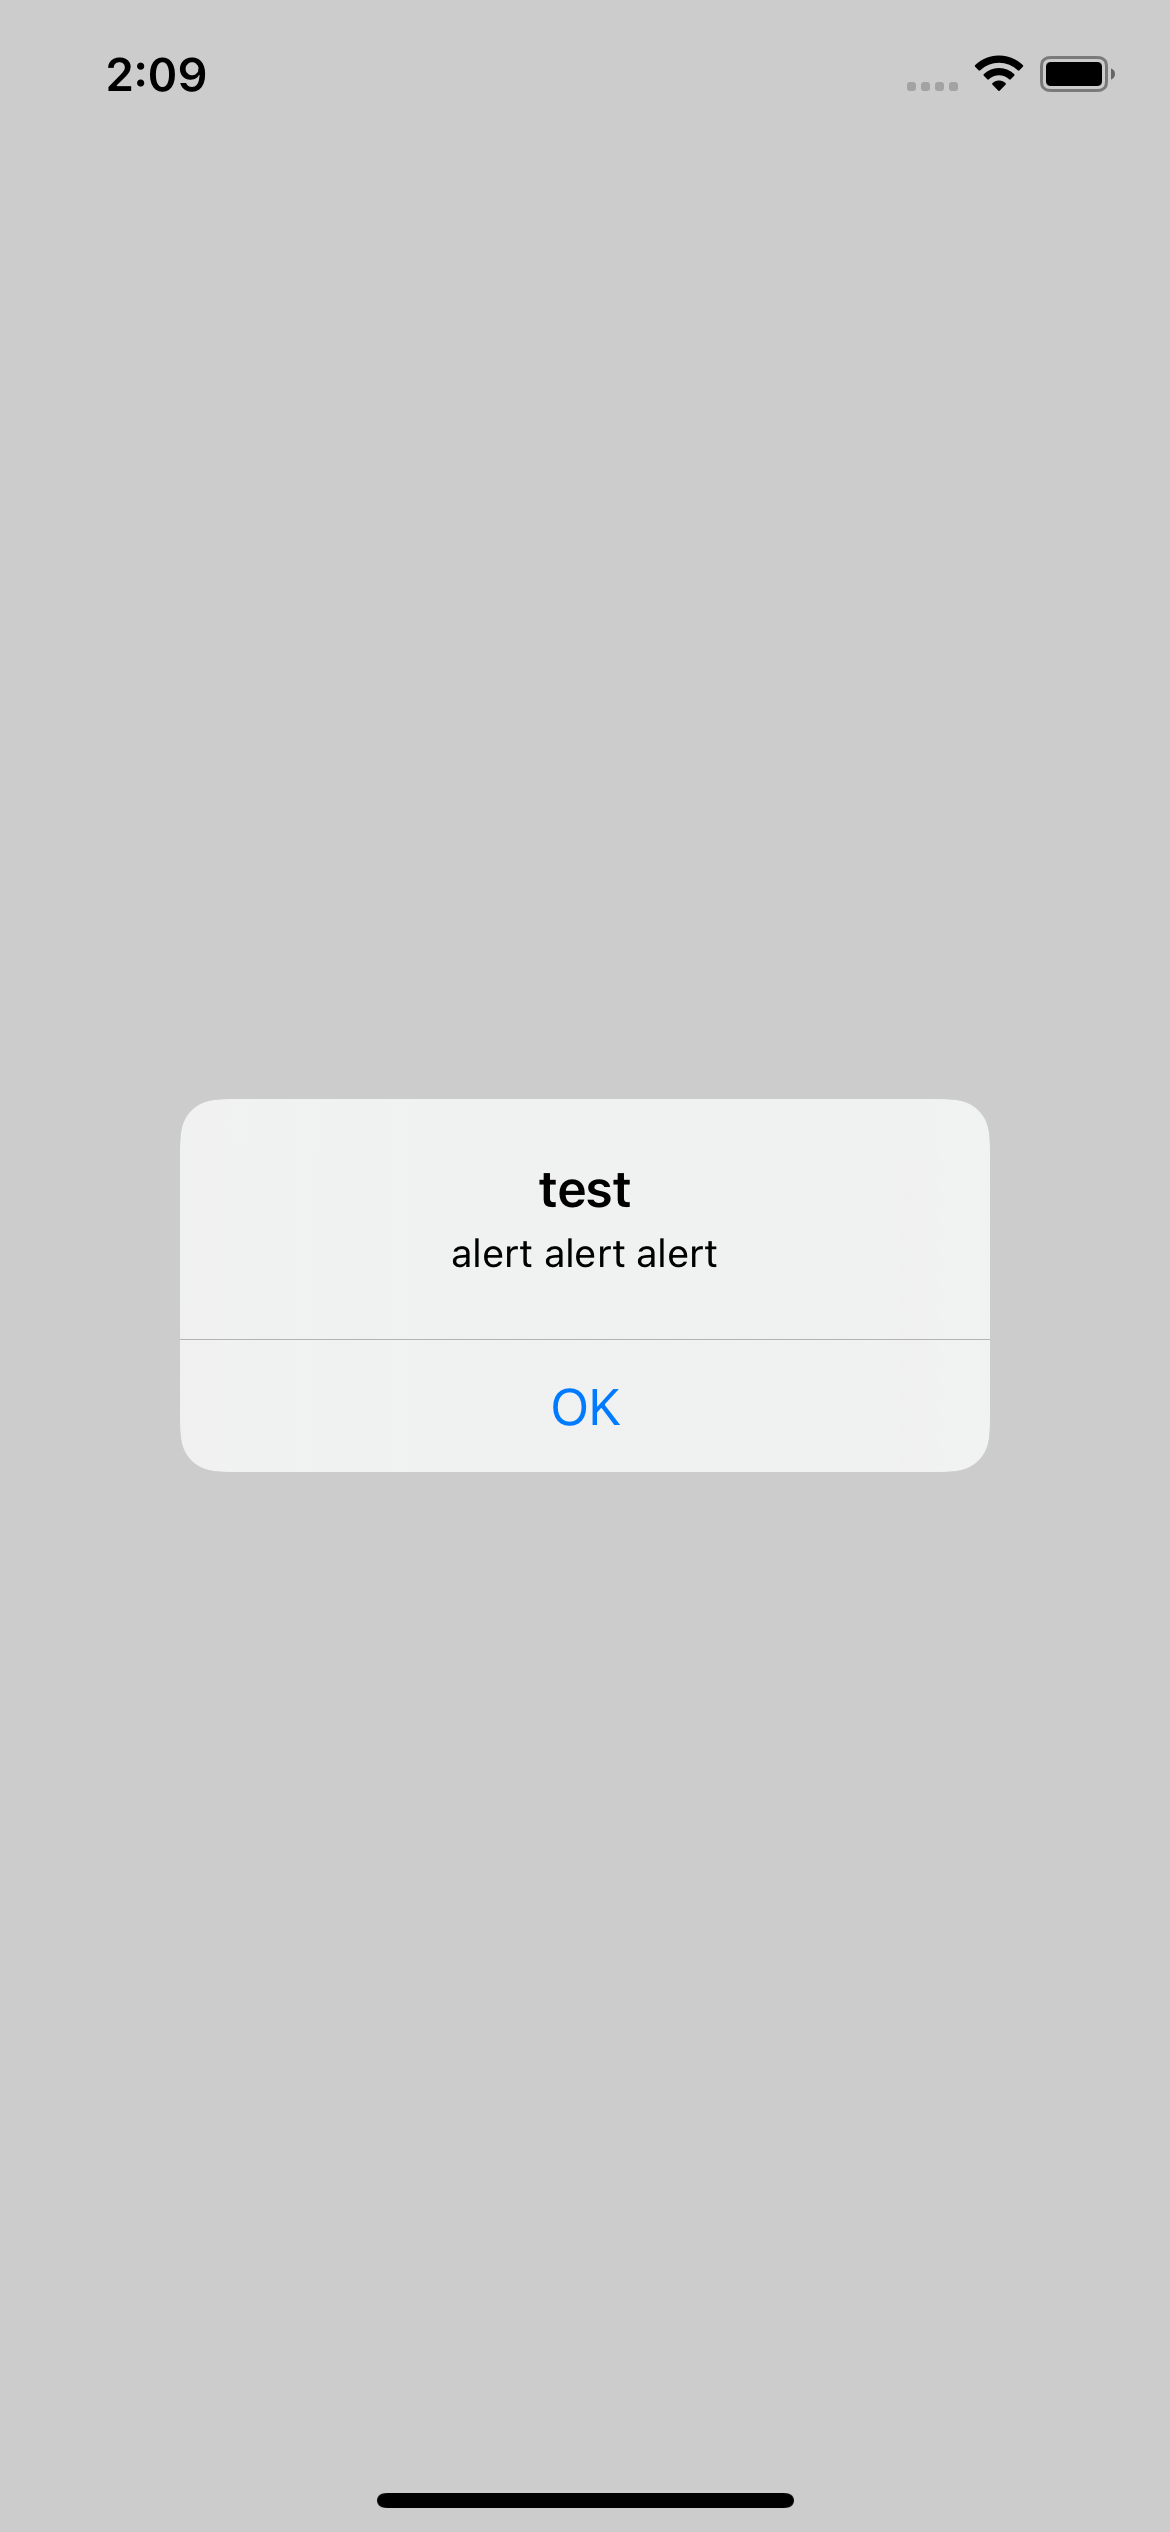 UIAlertController: Lập trình viên iOS không thể không biết tới UIAlertController. Đây là một trong những công cụ cơ bản để hiển thị các thông báo trong ứng dụng của mình. Thậm chí, bạn có thể tùy chỉnh các tùy chọn hơn và tùy chỉnh nó theo phong cách riêng của mình. Nhấp vào ảnh để tìm hiểu các chi tiết!